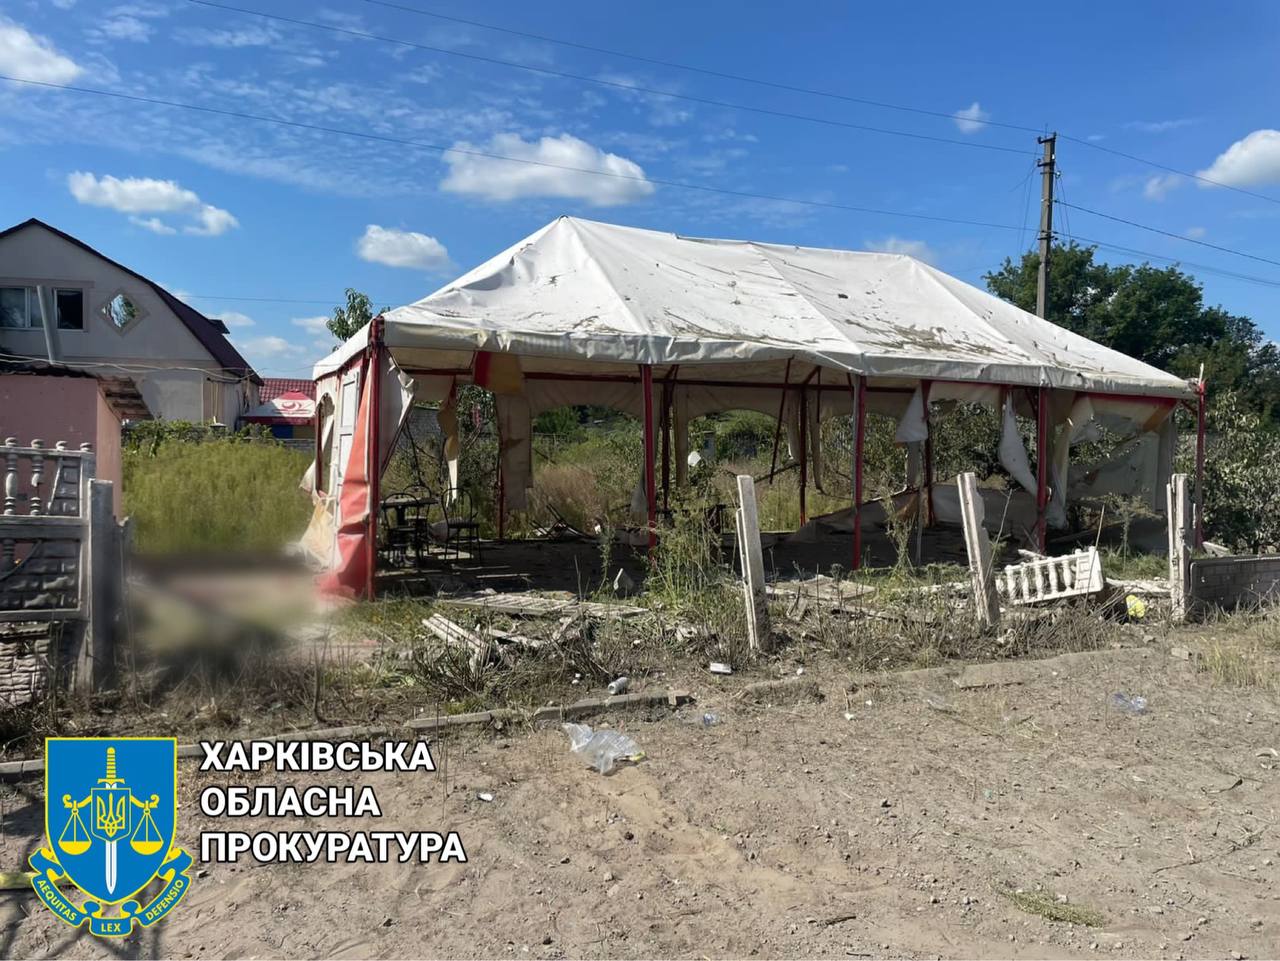 Вбили молоду жінку та дідуся у кафе-магазині на Харківщині окупанти